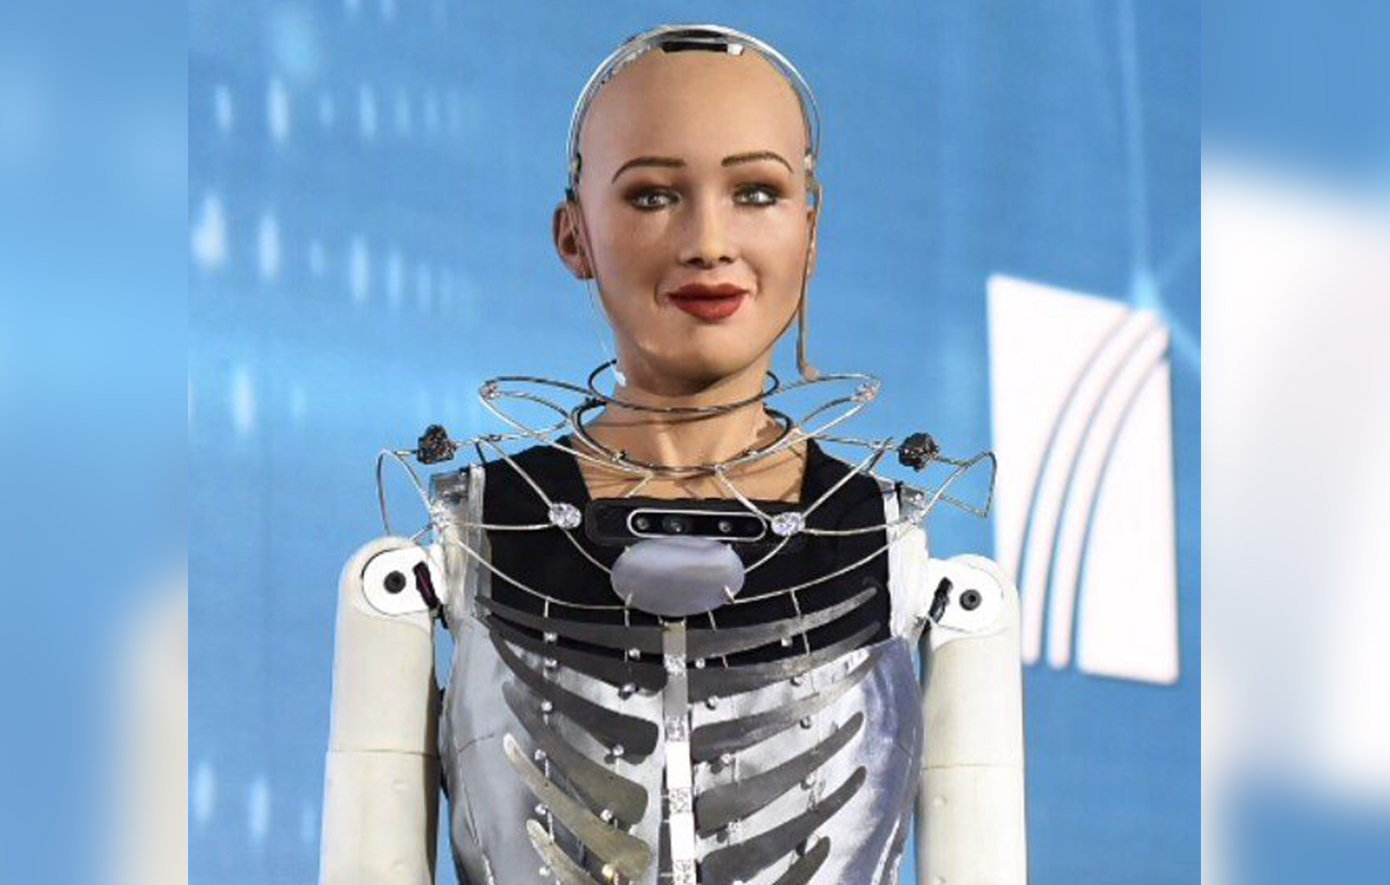 Στην έκθεση Beyond στη Θεσσαλονίκη το πιο διάσημο ρομπότ Τεχνητής Νοημοσύνης στον κόσμο, που μιλάει και ελληνικά